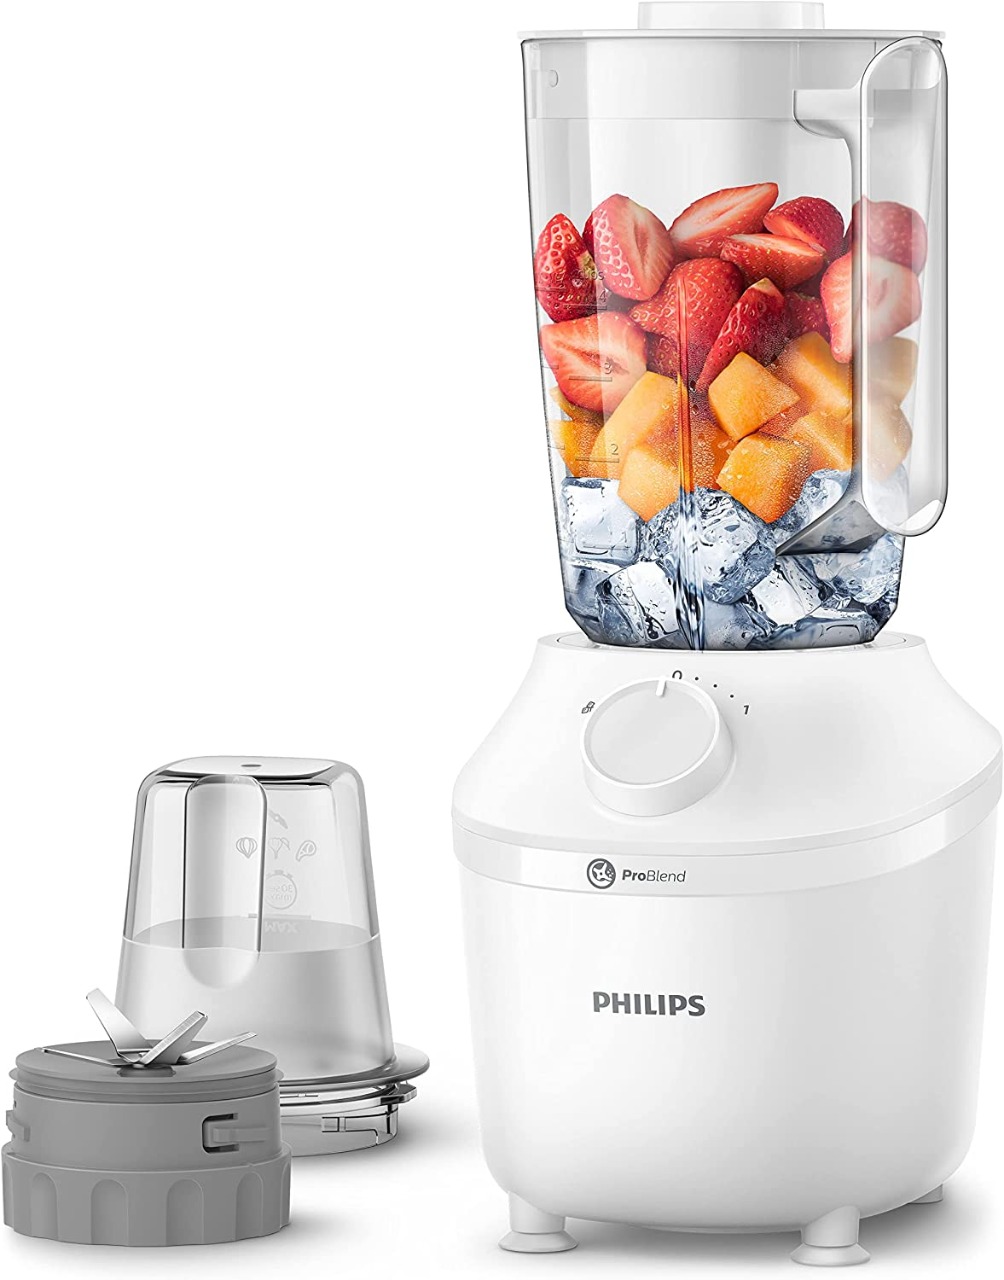 Philips blender - 450 watts - grinder